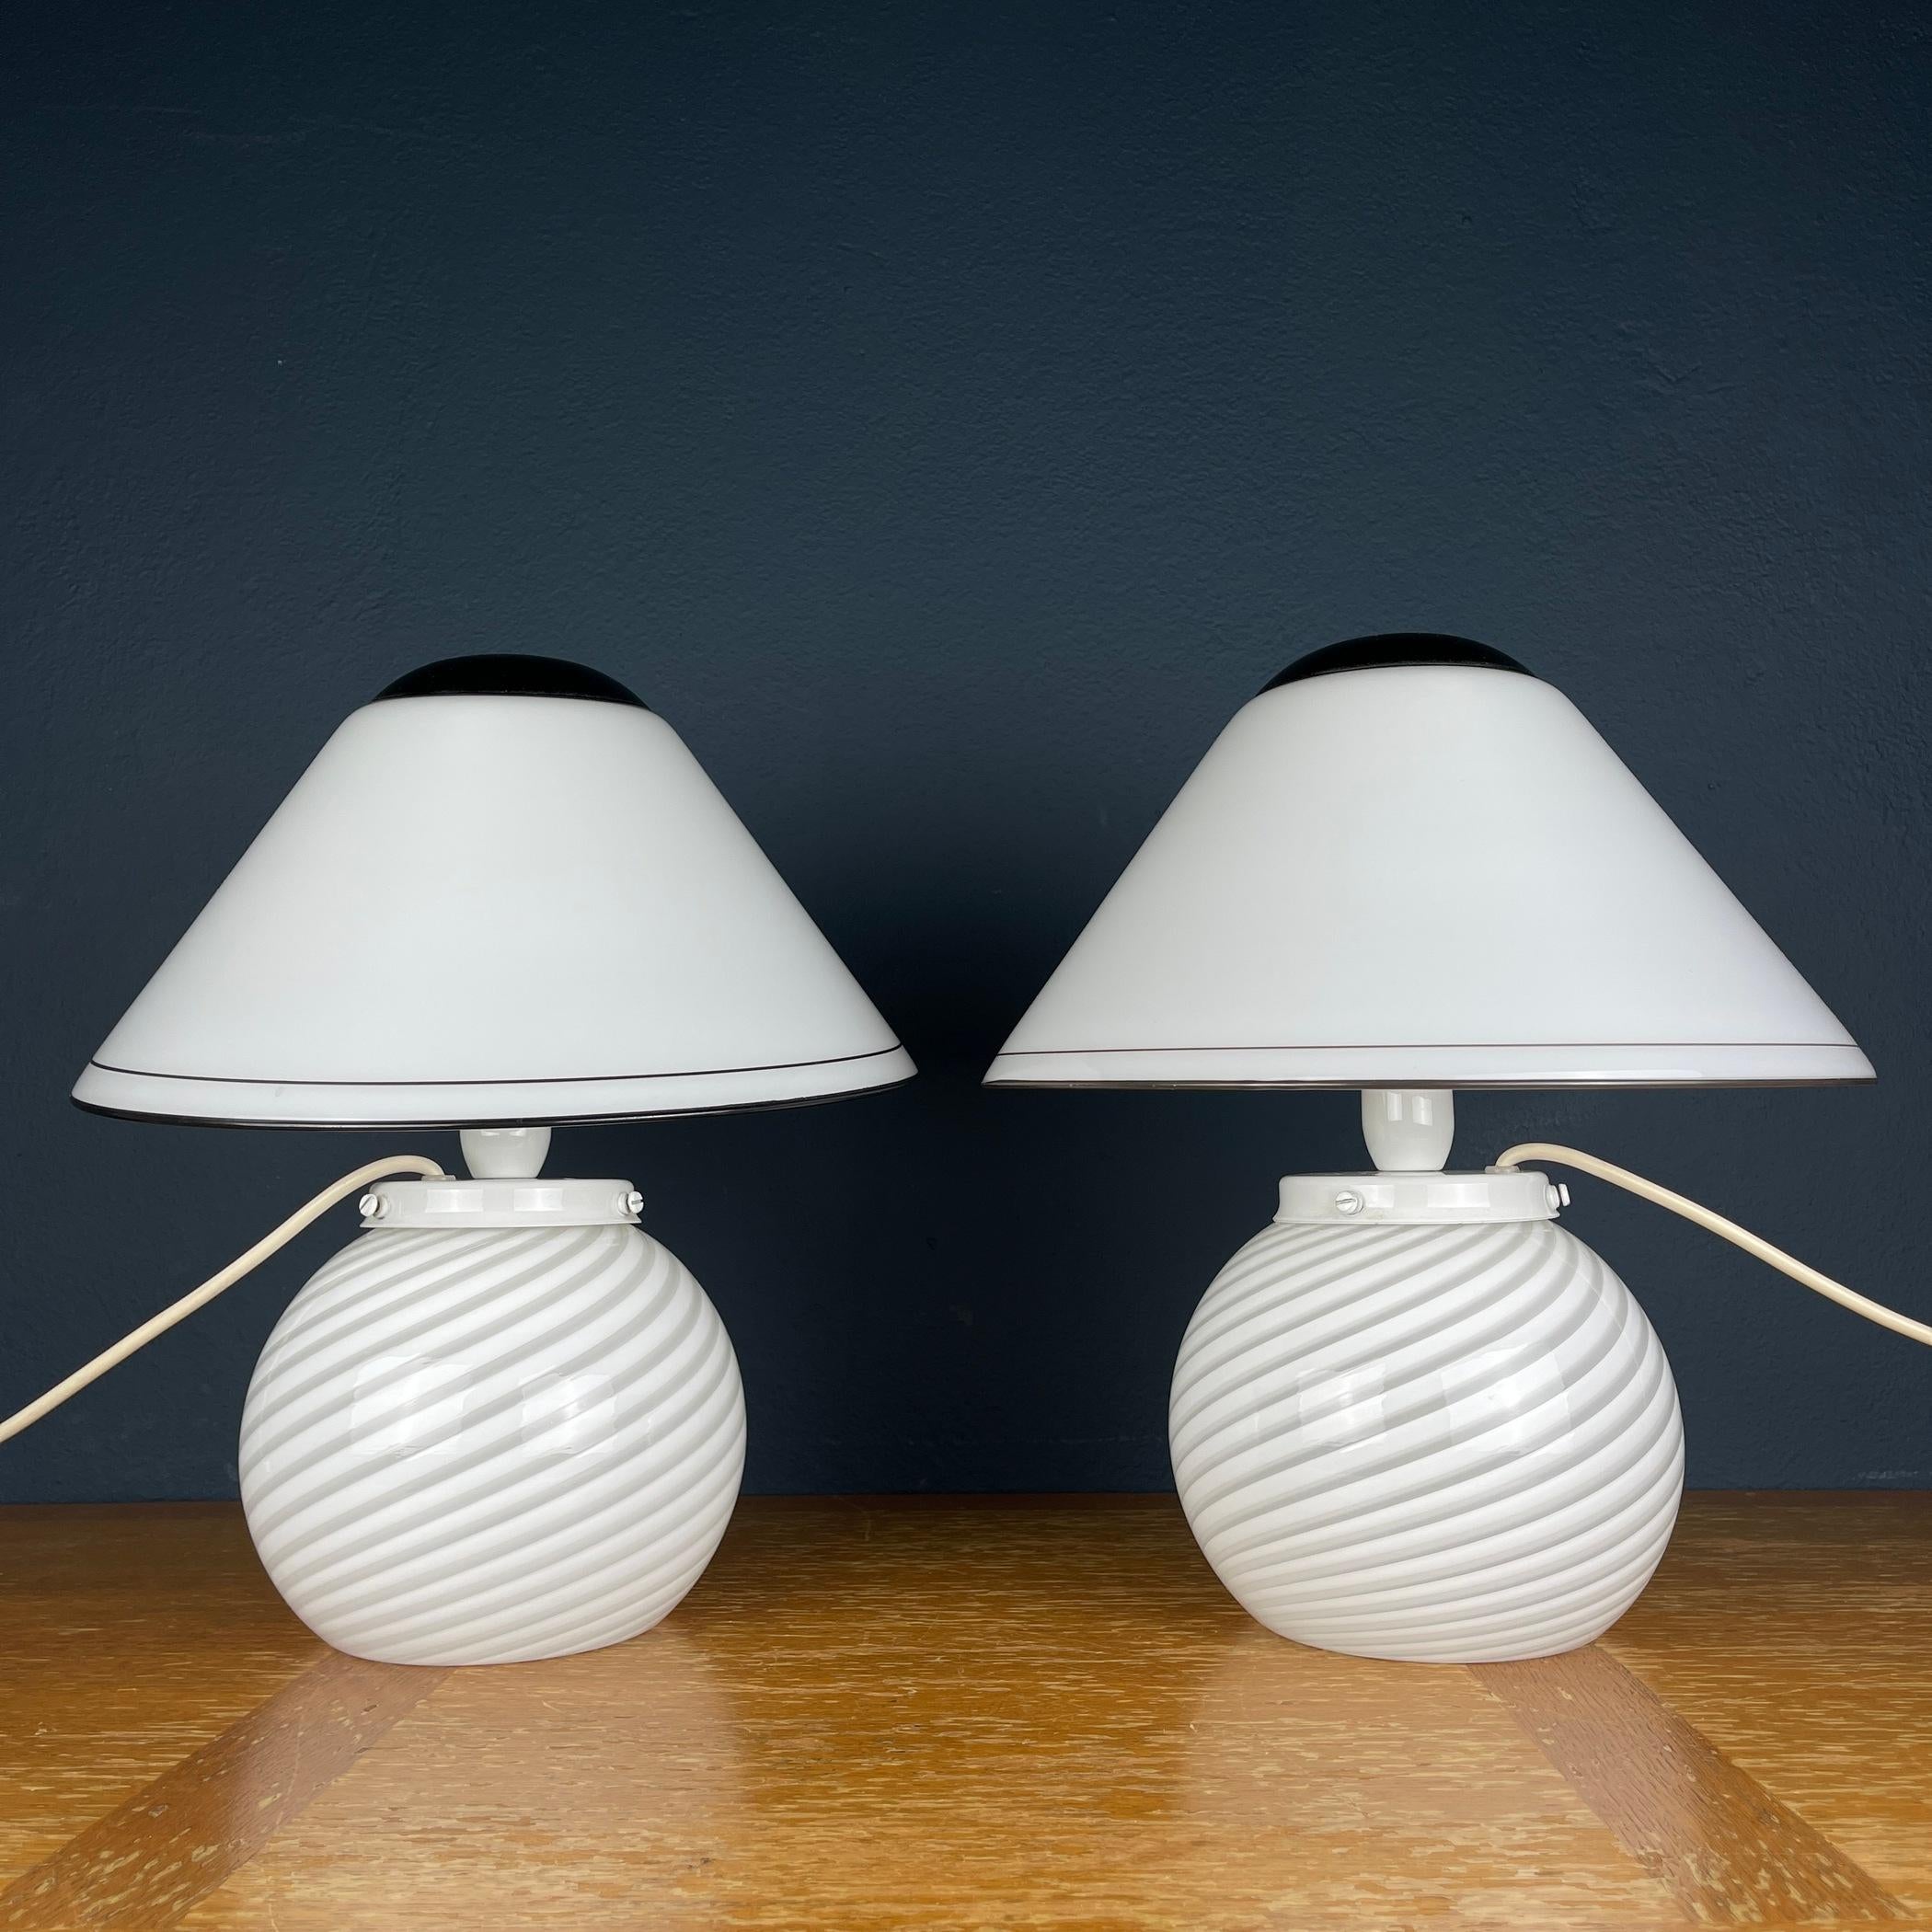 Sehen Sie sich dieses exquisite Paar Murano-Pilzlampen an, die in den lebhaften 1970er Jahren in Italien mit Präzision gefertigt wurden. Jede Leuchte ist ein Zeugnis der zeitlosen Anziehungskraft von gewirbeltem Glas, das bezaubernde Muster in Ihren